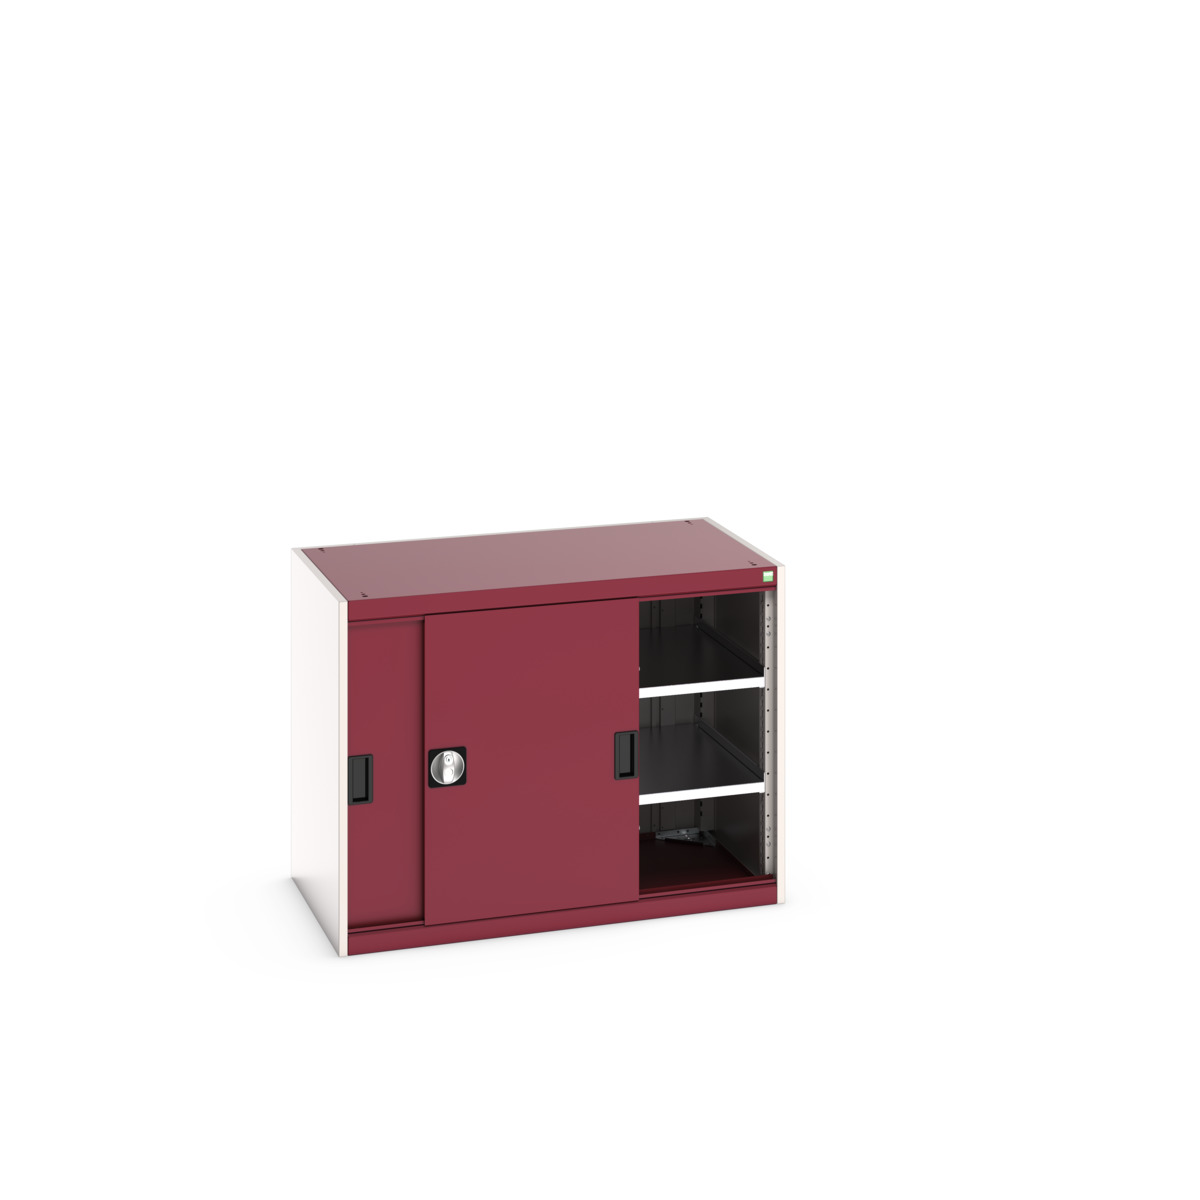 40021137.24V - cubio cupboard